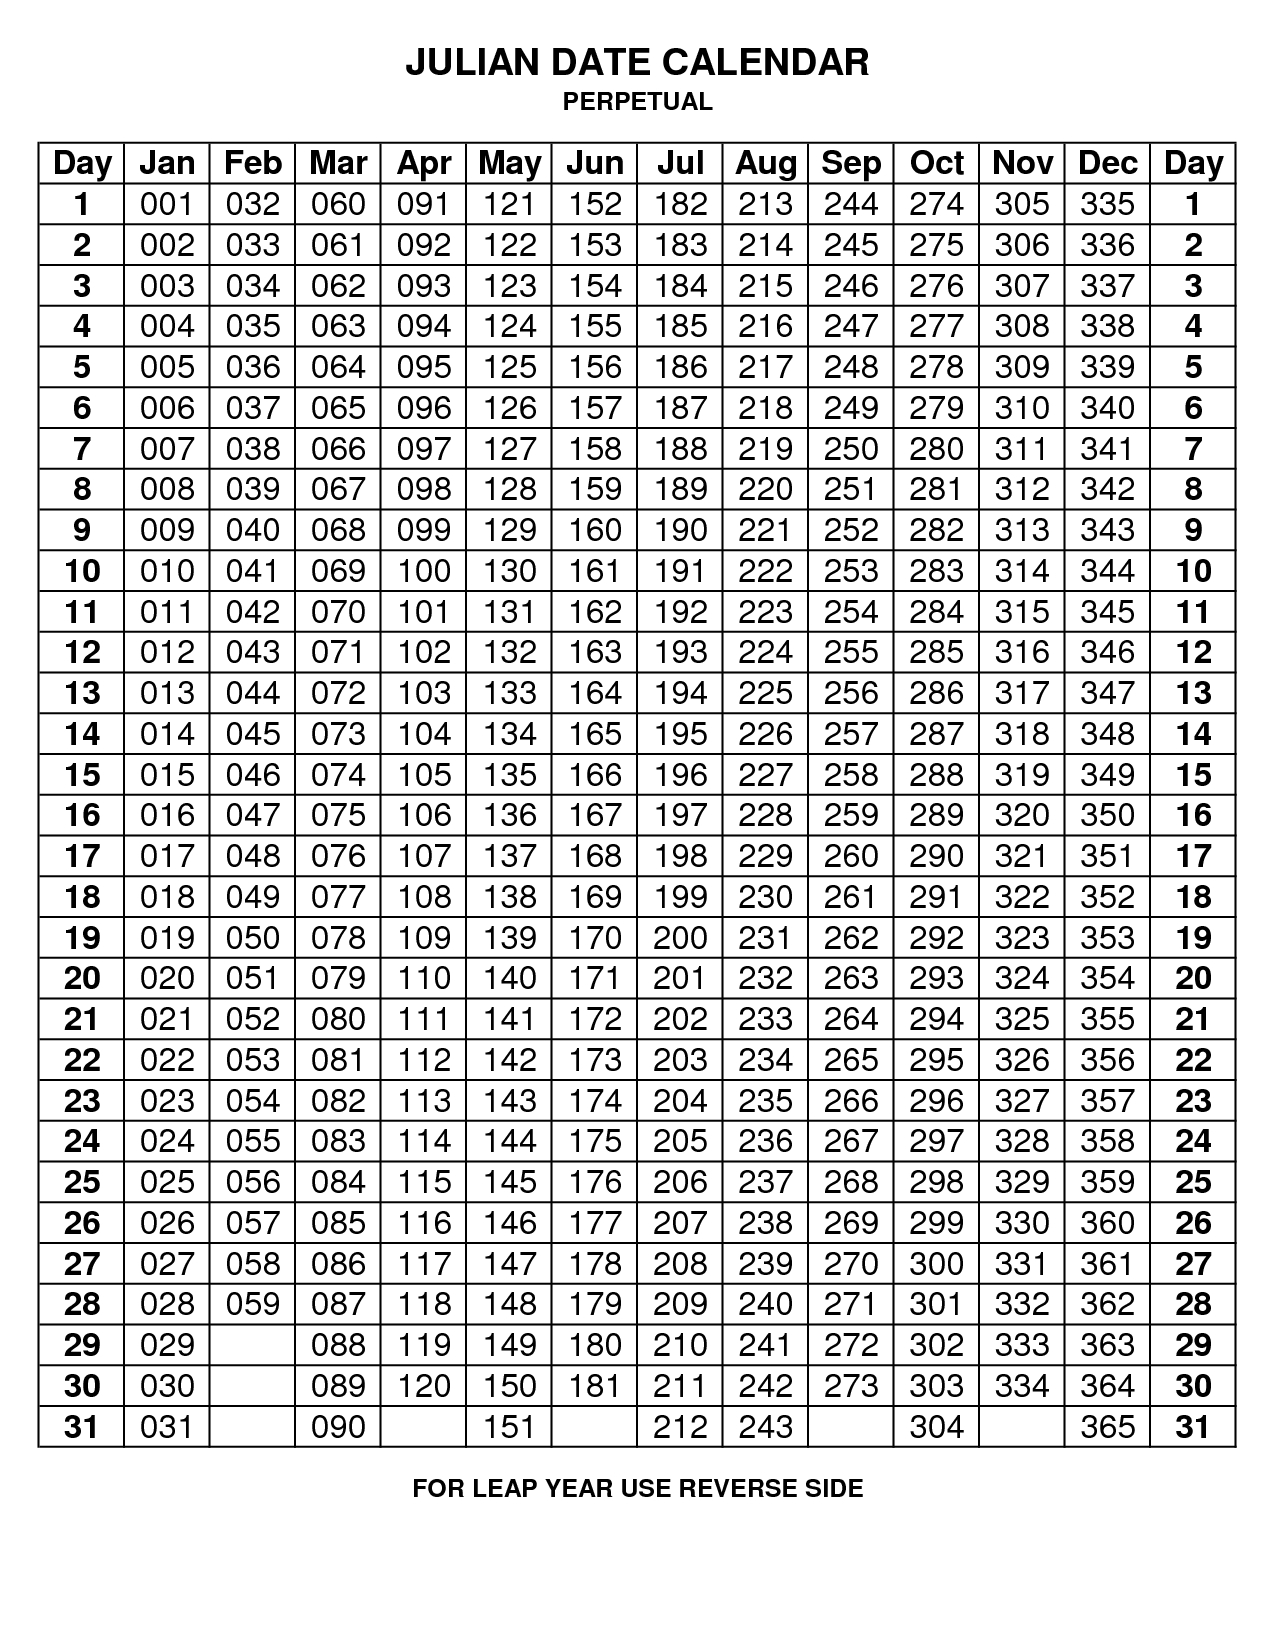 Julian Calendar 2015 Printable • Printable Calendar Template Calendario Juliano 2021